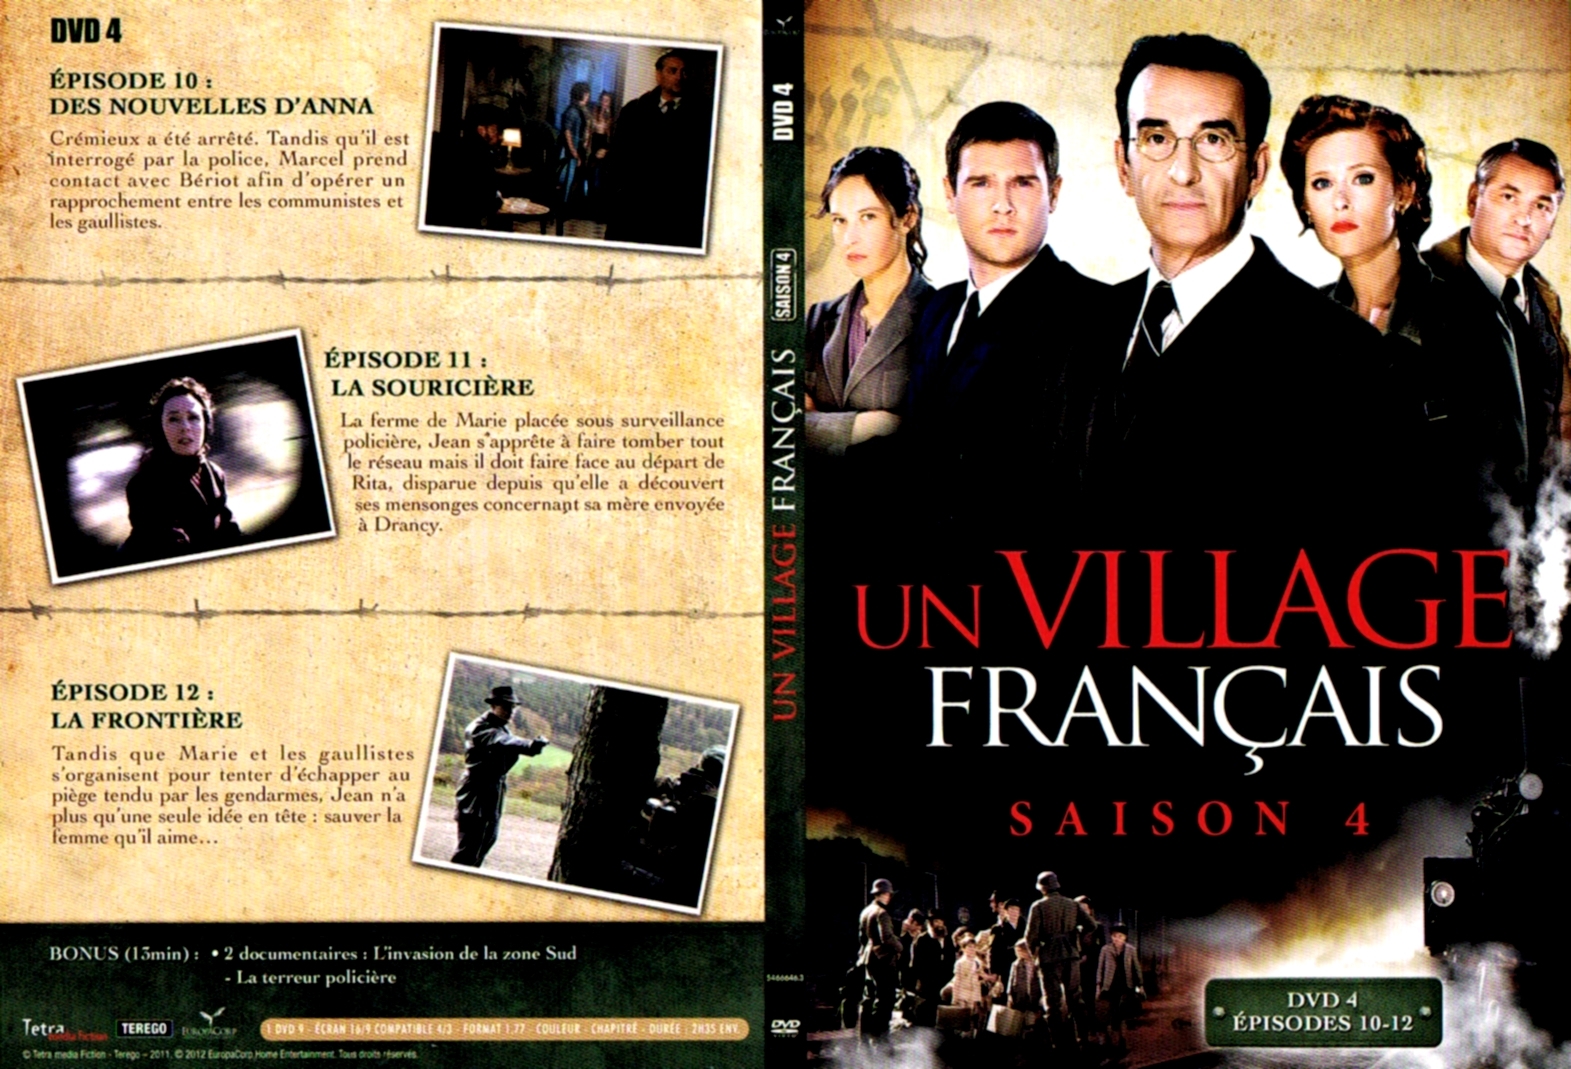 Jaquette DVD Un village francais Saison 4 DVD 3